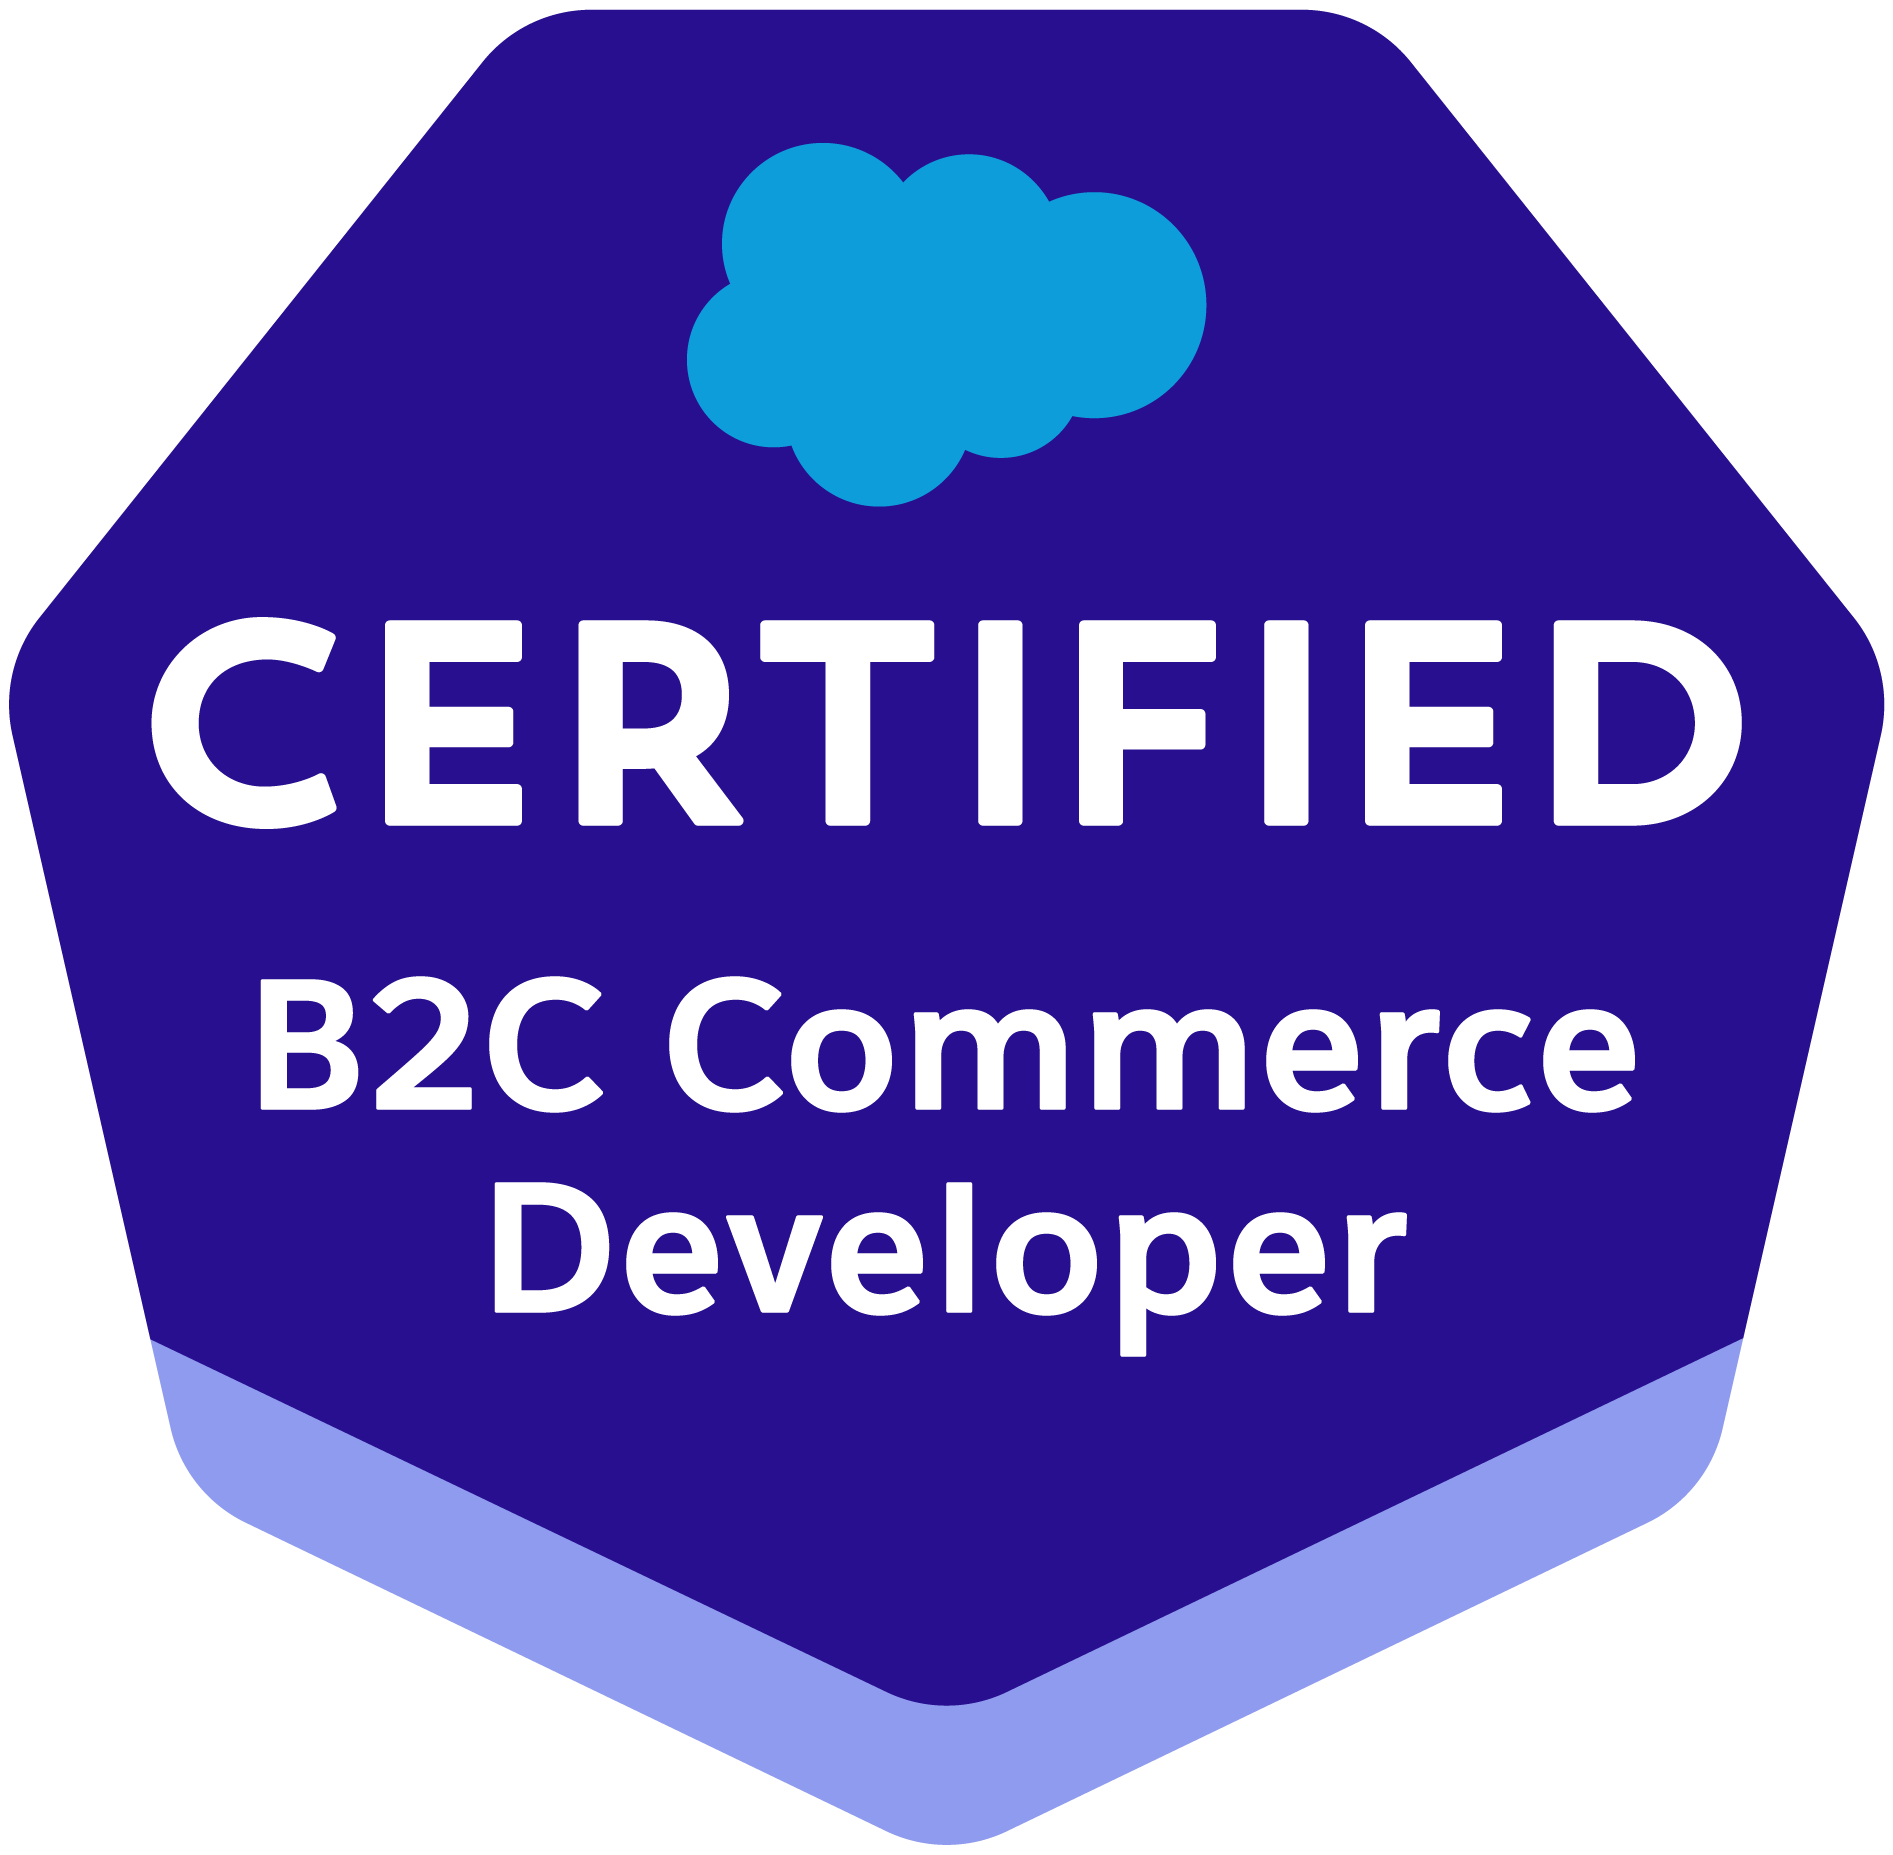 B2C Commerce Developer certification